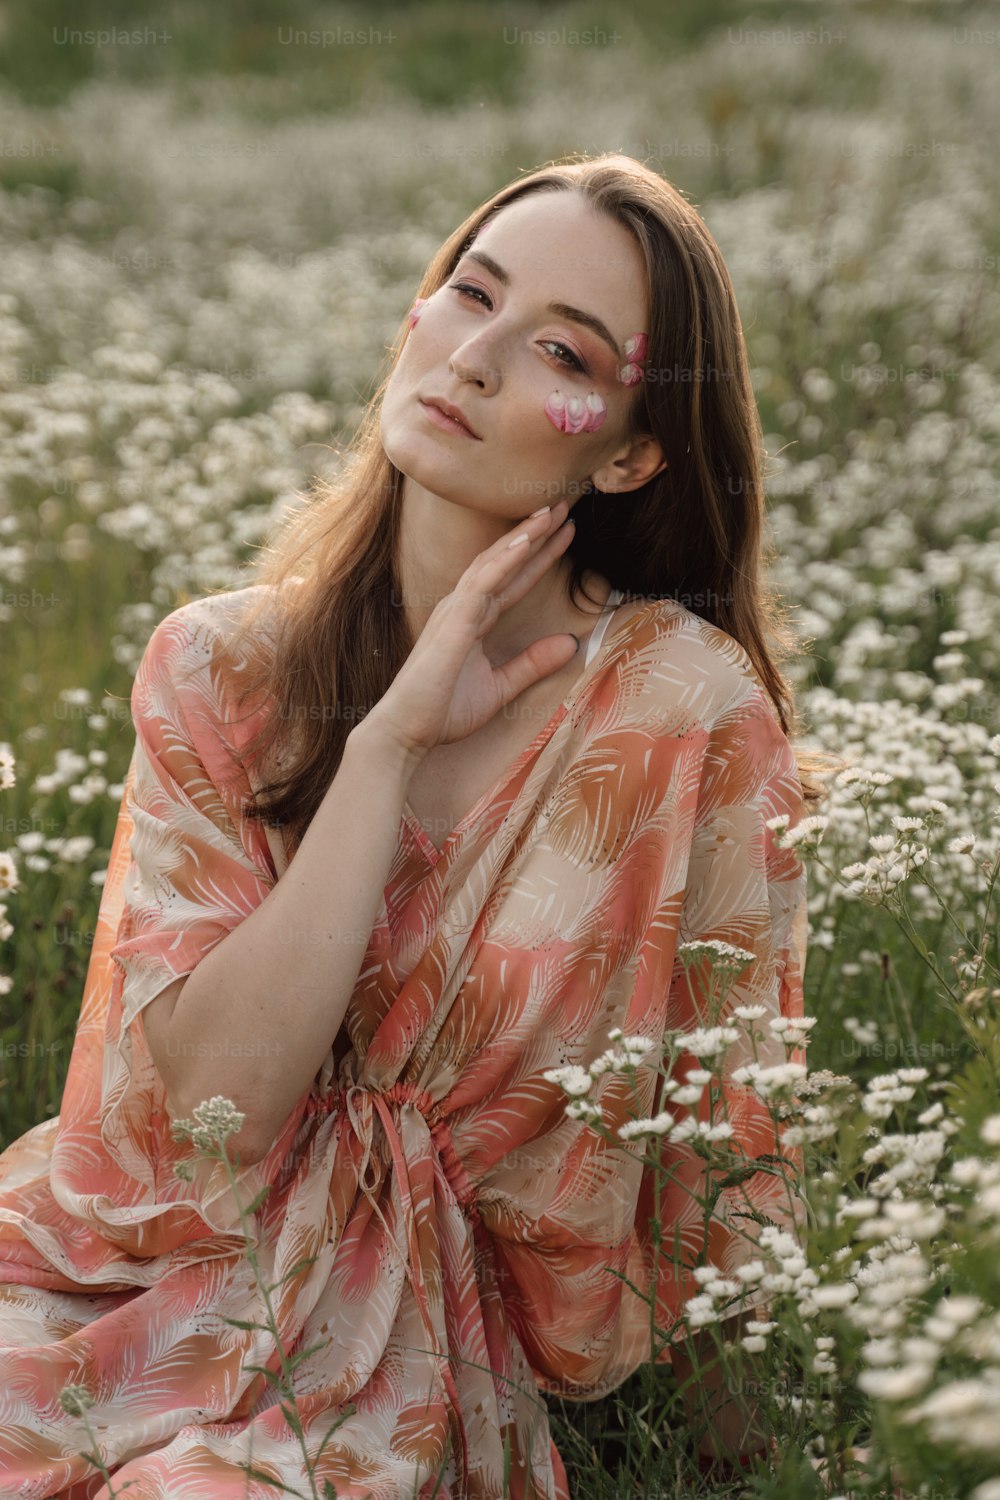 Una mujer sentada en un campo de flores blancas